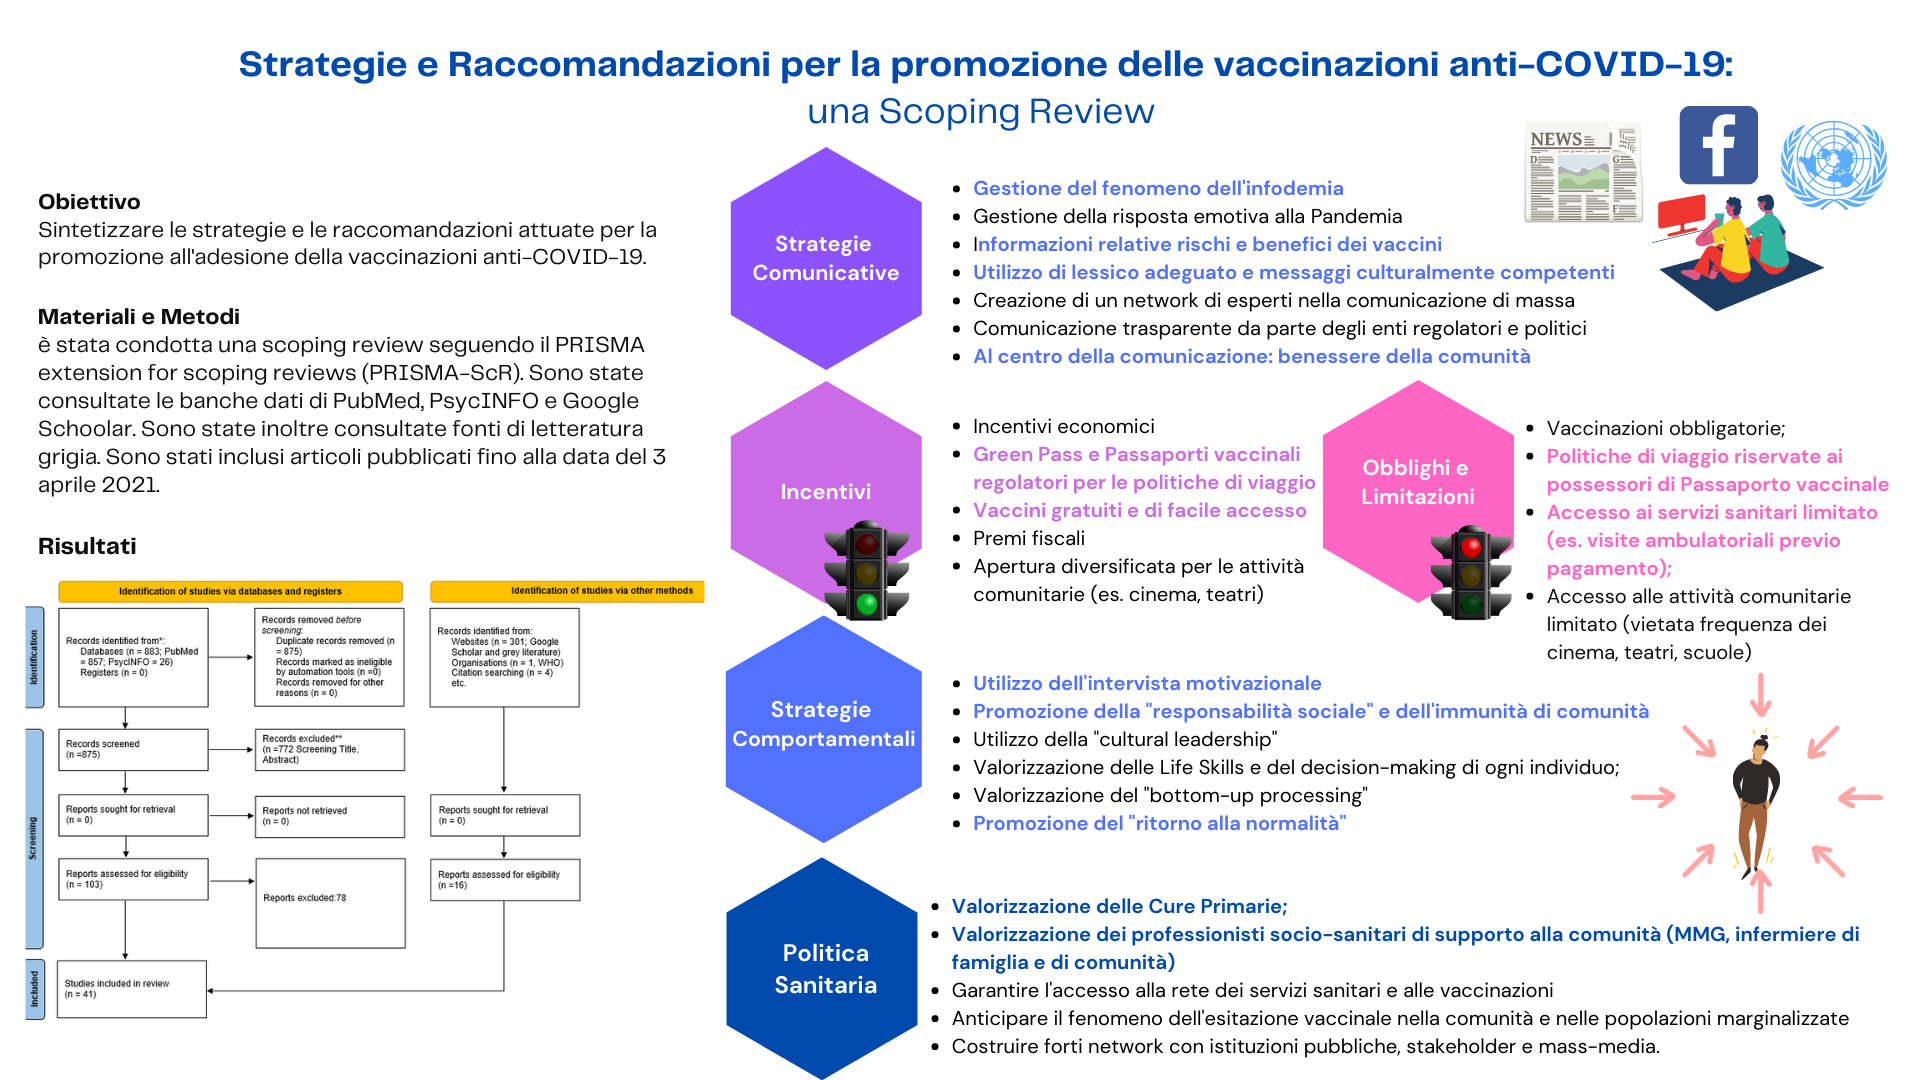 Il Management dei processi comunicativi di massa e il controllo dell'infodemia sono strategie fondamentali per l'aumento delle intenzioni vaccinali per il COVID-19 nella popolazione generale a livello globale. 